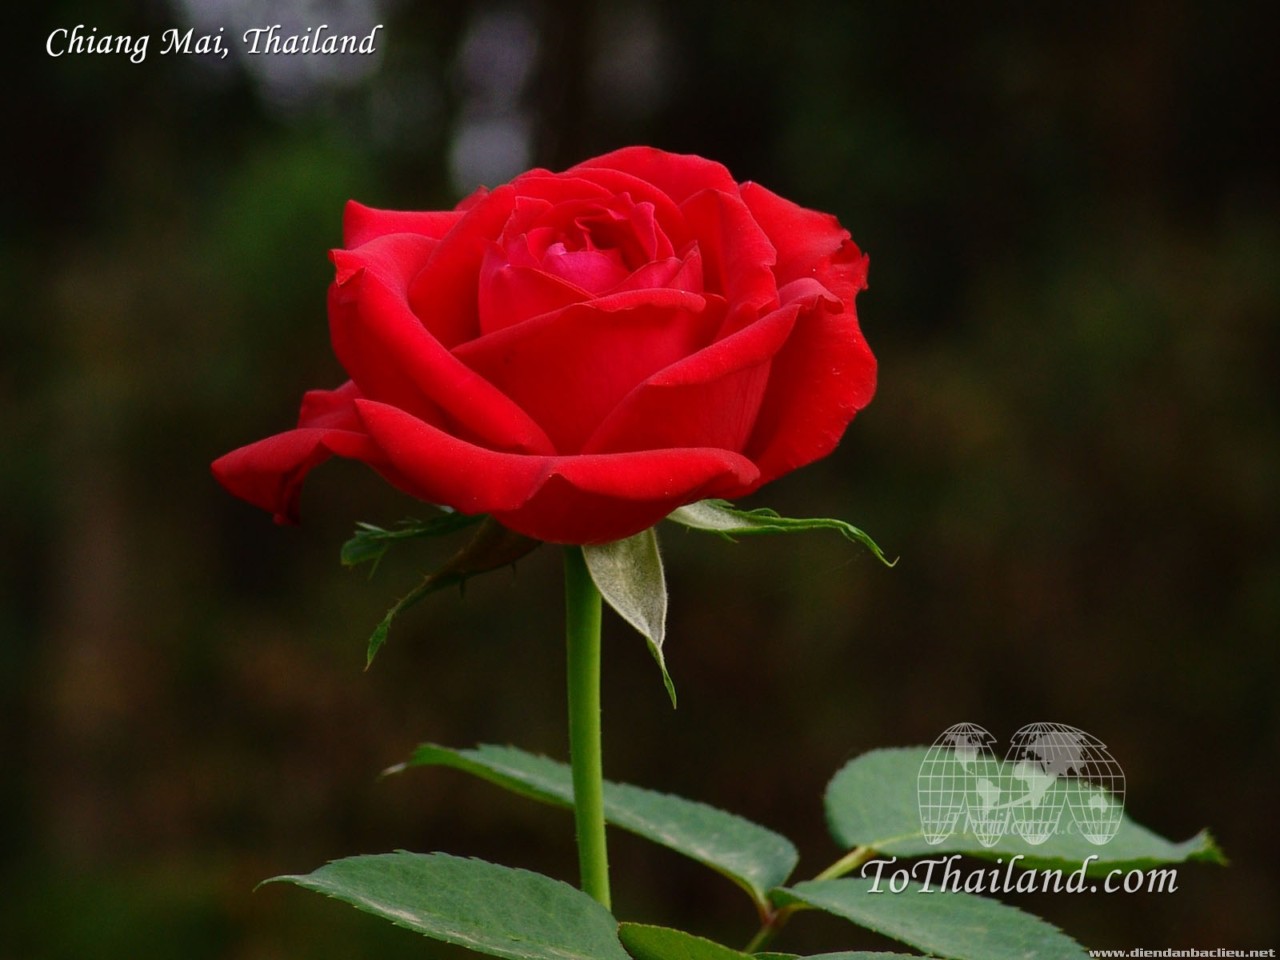 Hoa hồng đẹp nhất – Sabrina, Elina, Topaz, Anastasia, hay Yves Piaget,... trong những tên gọi khác nhau, họ đều là những loài hoa hồng đẹp nhất có thể sở hữu. Hãy cùng chiêm ngưỡng những bức ảnh đầy lôi cuốn với những hoa hồng đẹp nhất, và khám phá vẻ đẹp tối giản với các họa tiết hoa khác nhau.